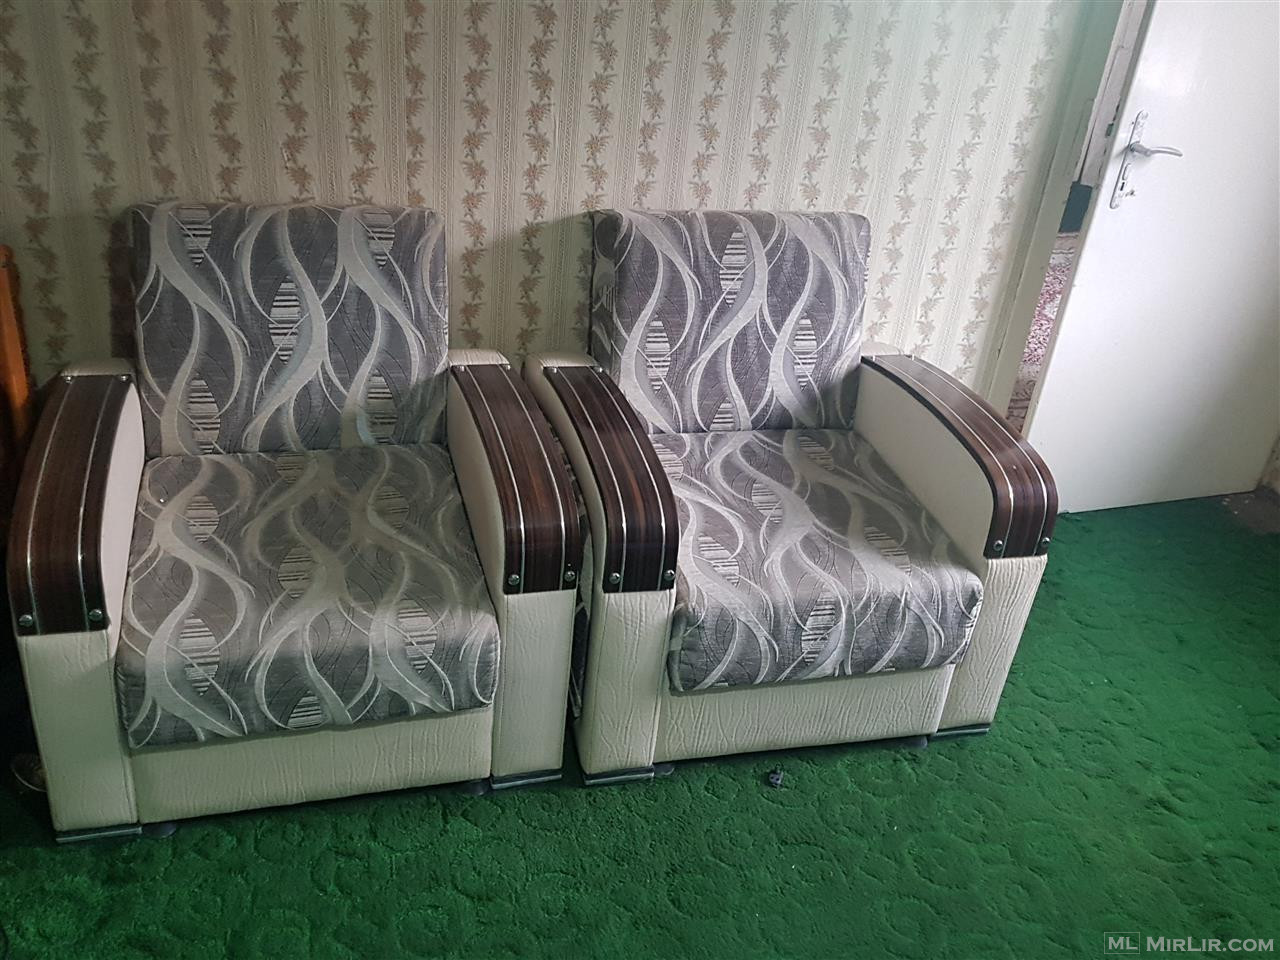 Kolltuk (fotele)